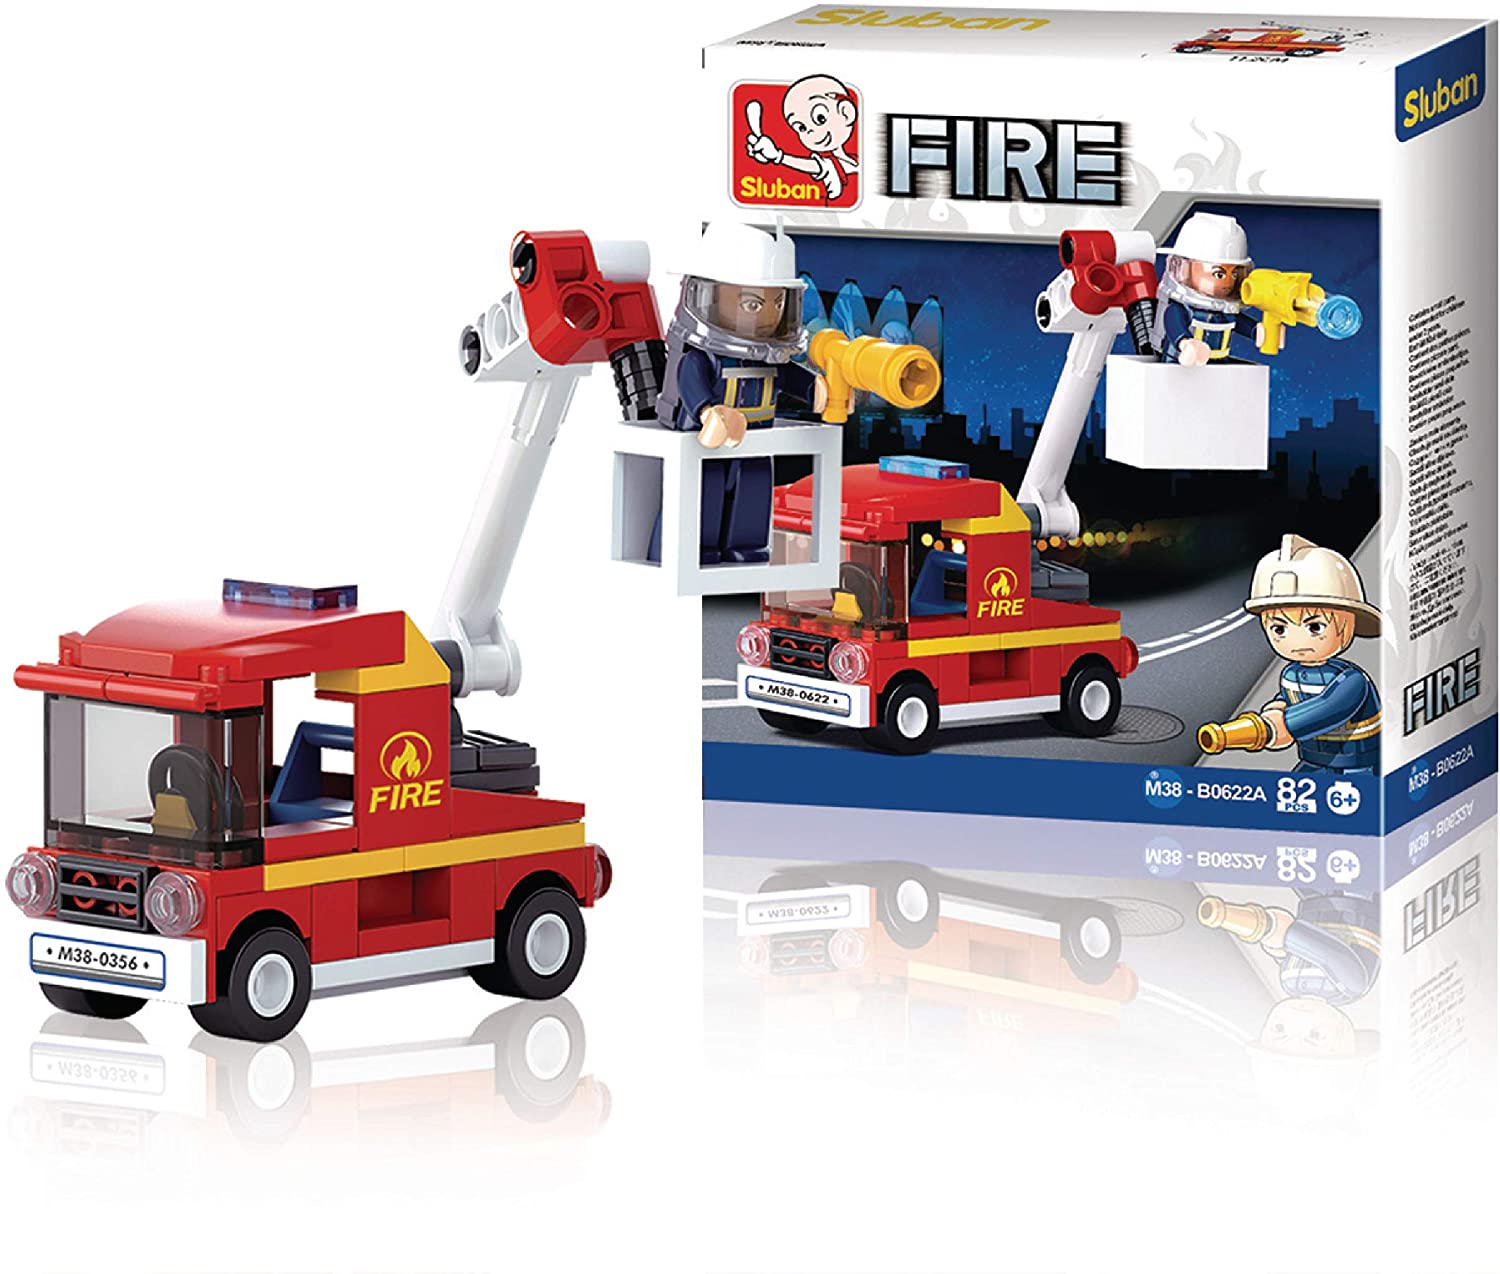 Sluban Building Blocks Fire Series [M38 B0622 A]